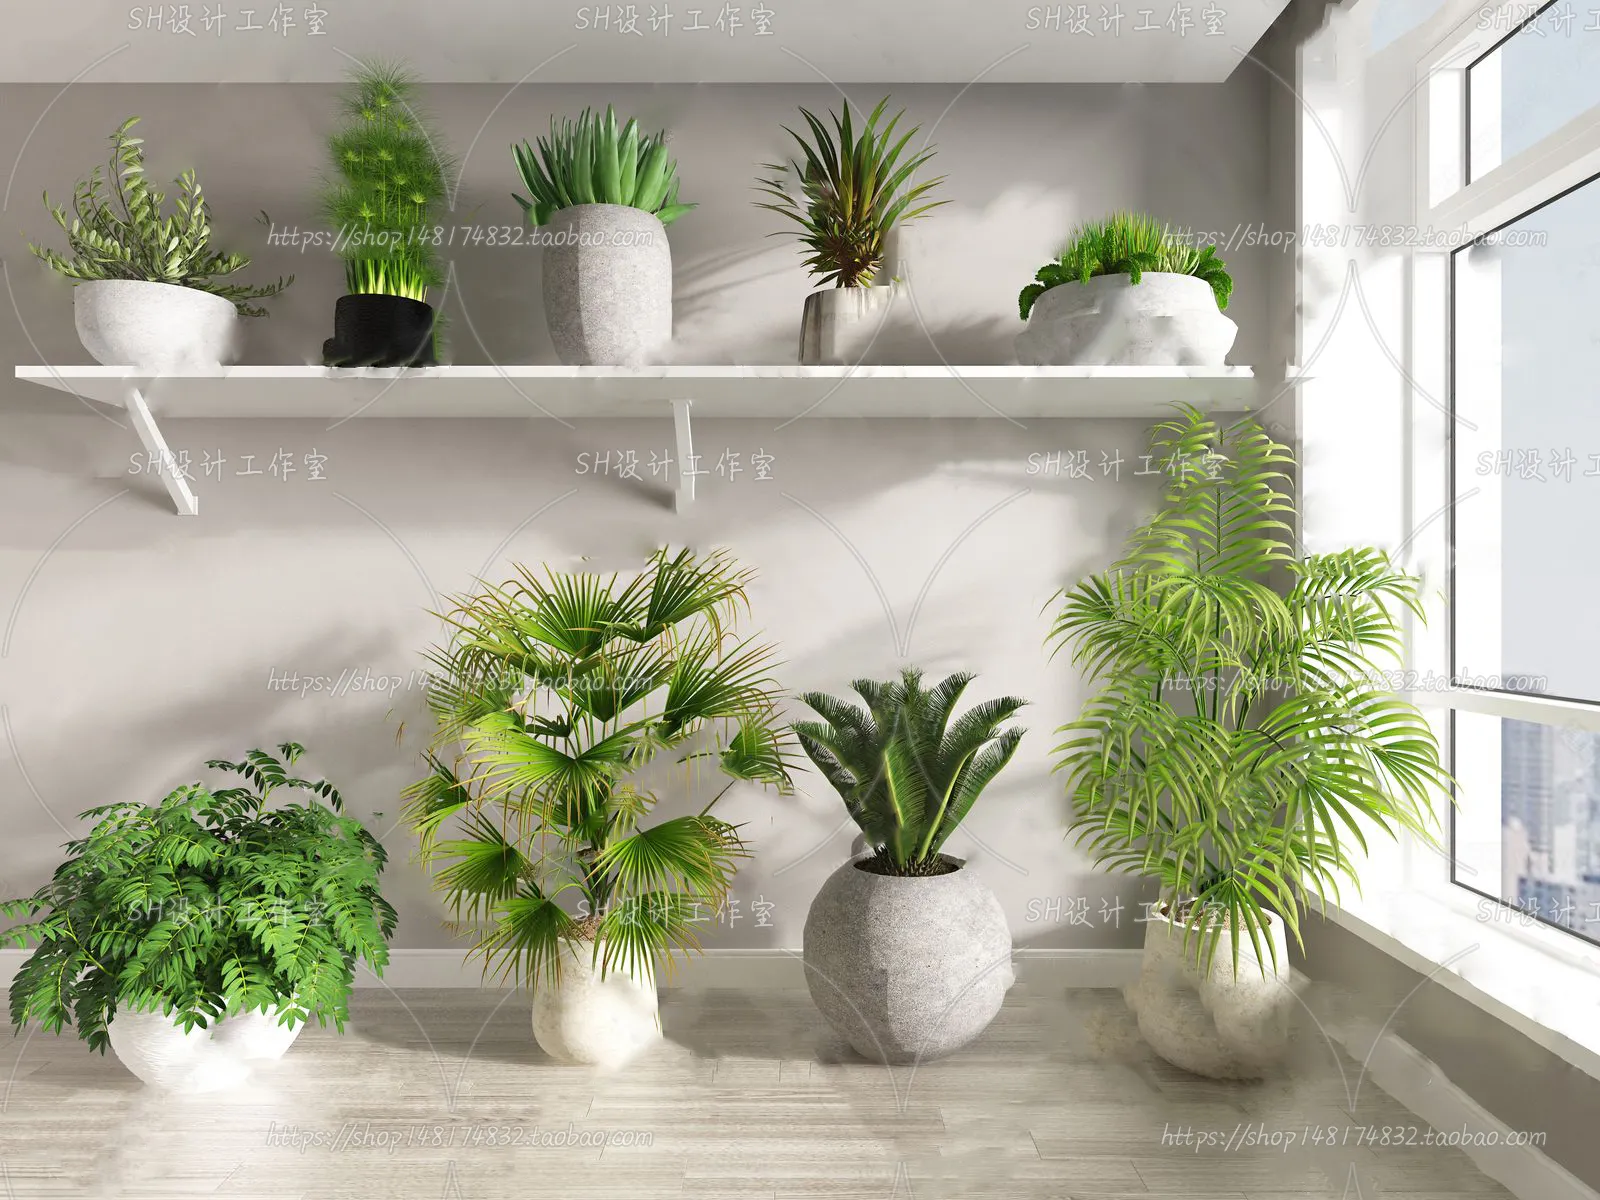 PLANT 3D MODELS – 046